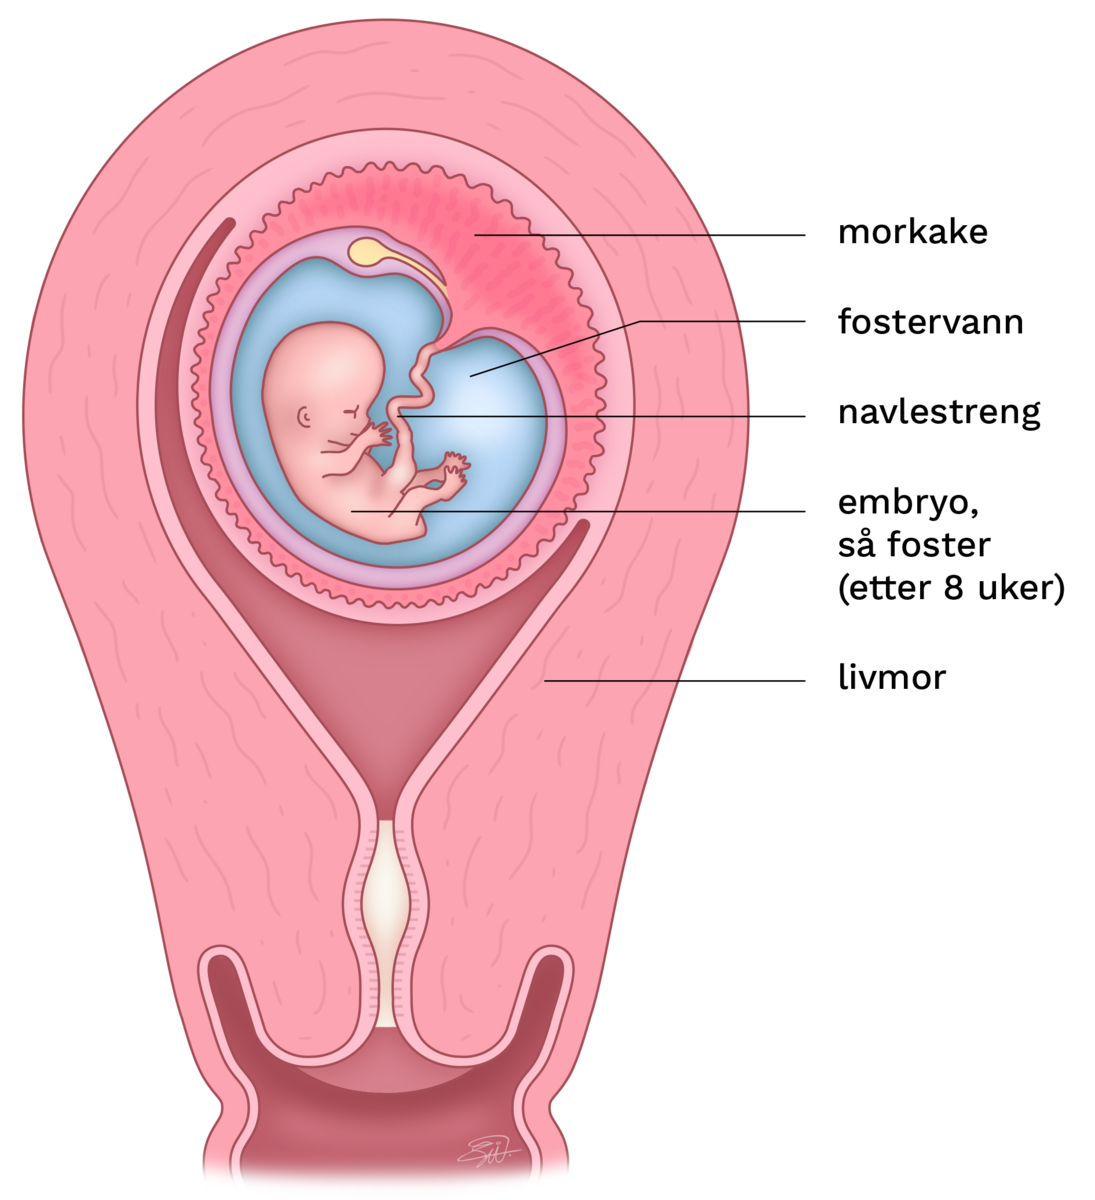 En gravid livmor er gjennomskåret for å se embryoet. Embryoet på 8 uker har et veldig stort hode og man ser øyelokk, ører, armer, ben, fingre og tær. Embryoet er omgitt av en ballong fylt av fostervann. Ballongen er omgitt av en morkake med små, fingeraktige utvekster til livmorveggen. Morkaken og embryoet er forbundet gjennom navlestrengen. Morkaken med innholdet ligger inni livmorveggen, som buler ut.